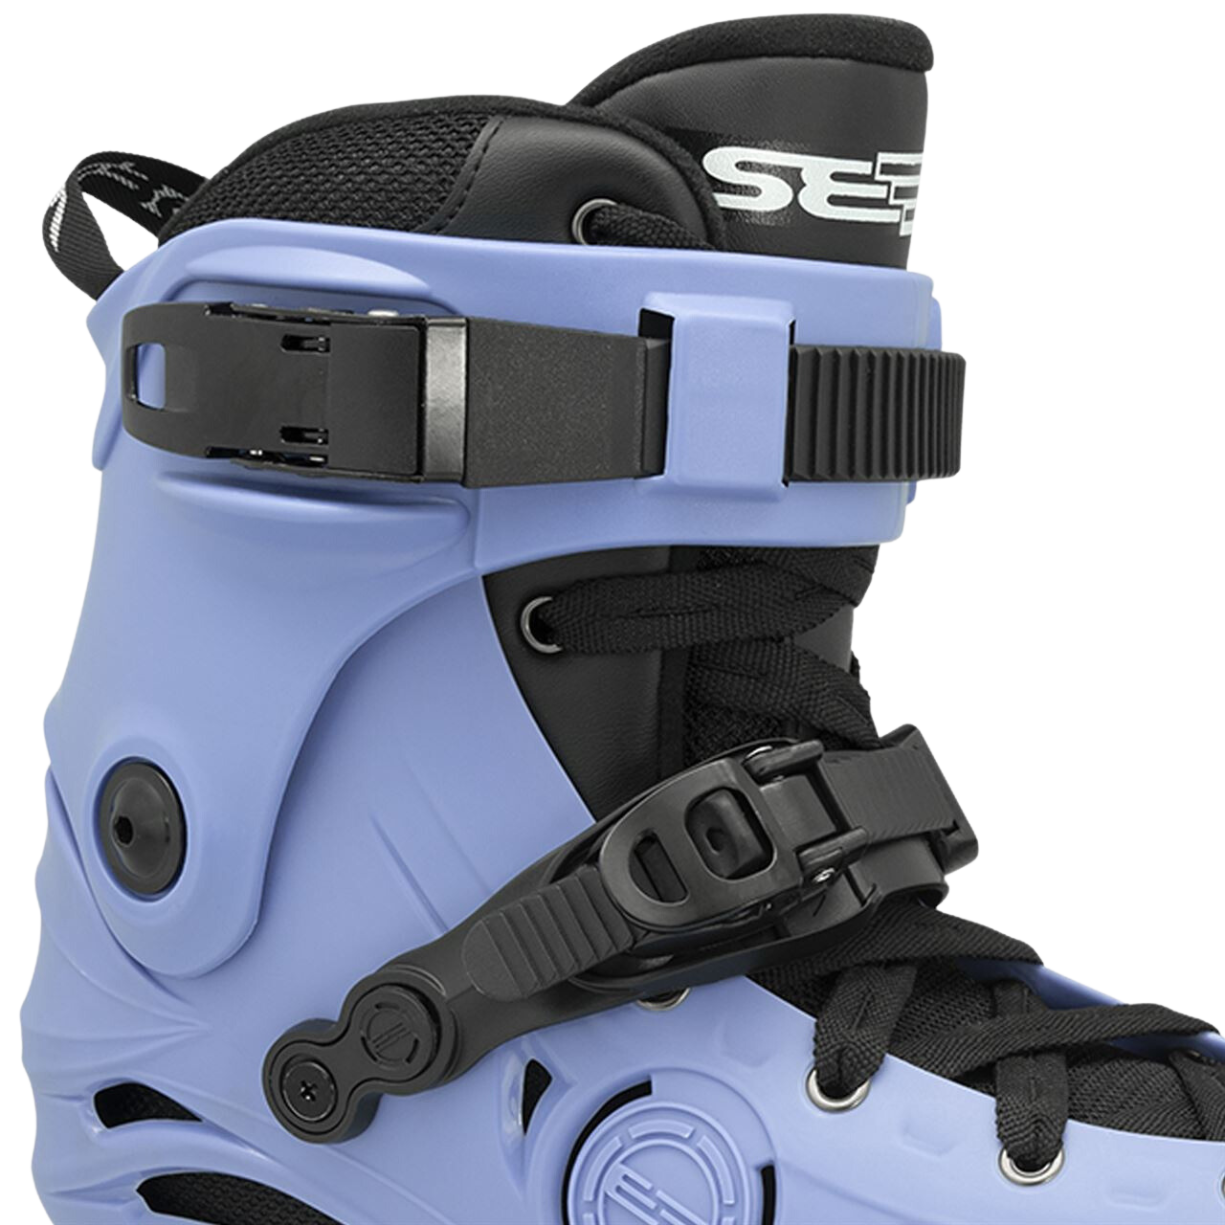 Seba E3 80 Premium In-Line Skates